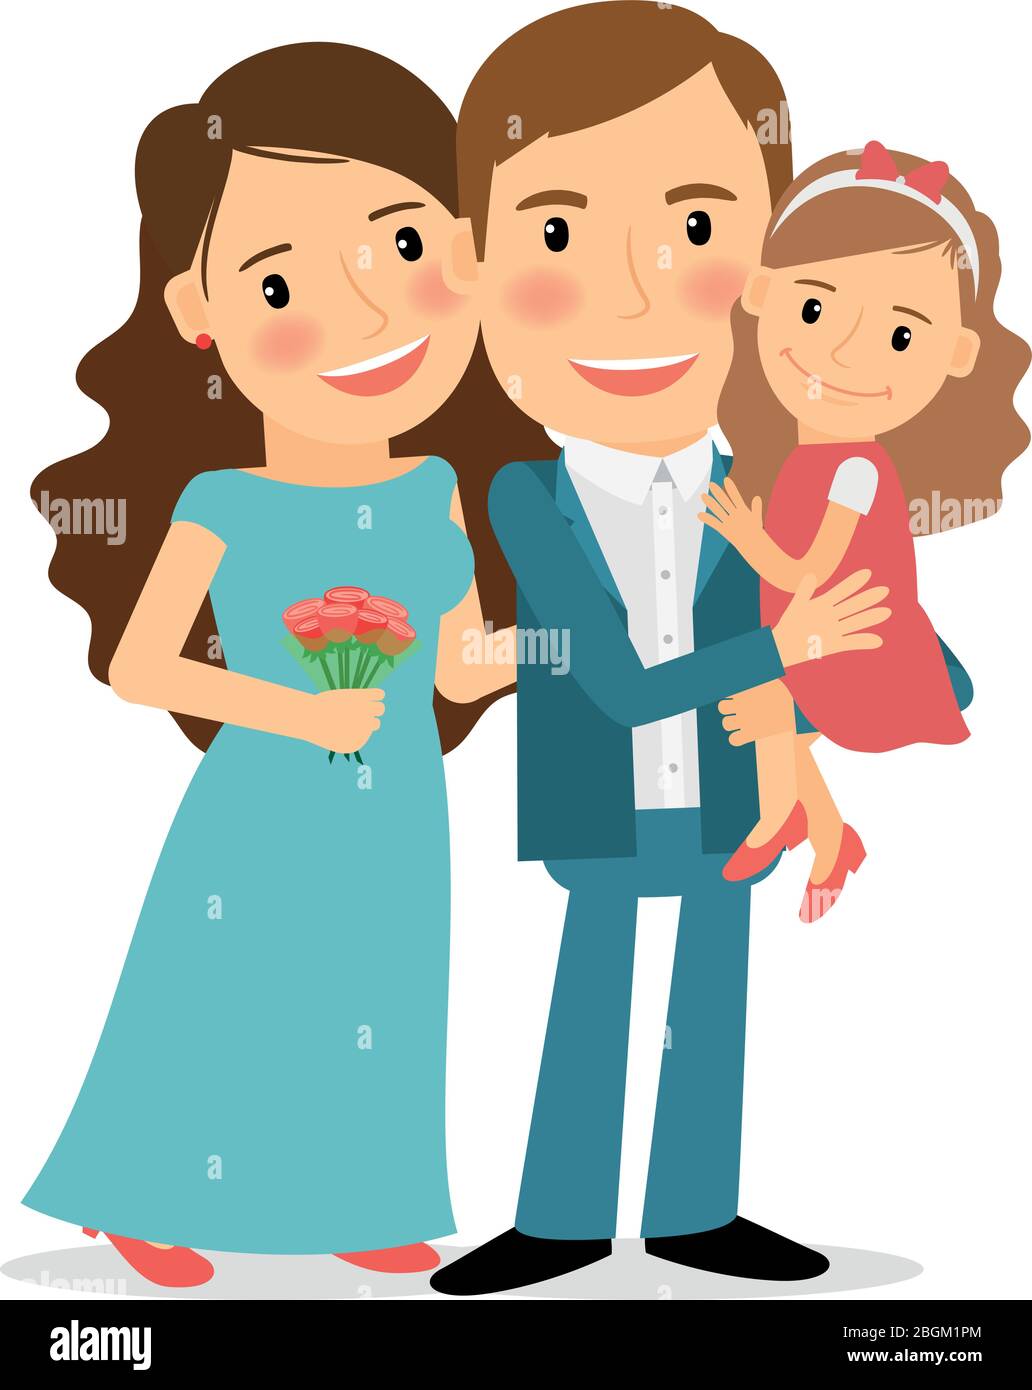 Glückliches Familienporträt. Mama, Papa und kleine Tochter Vektor-Illustration. Stock Vektor